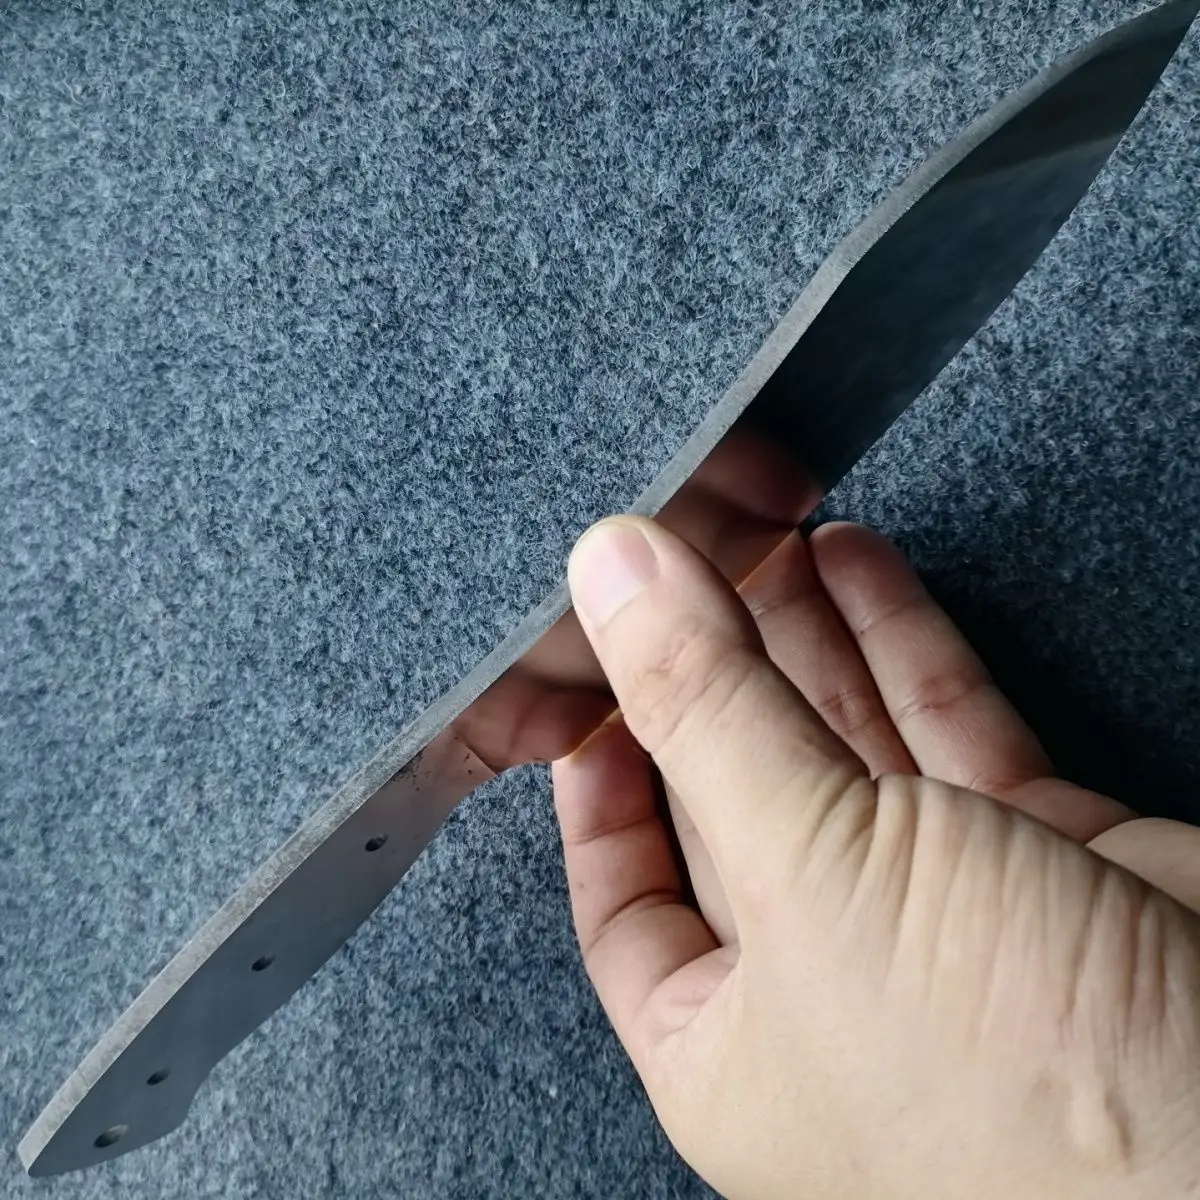 Akciós ár gyári farok áruk M390 por acél konyhai kés félkész kés Osztrák Bailu farok árut lehet